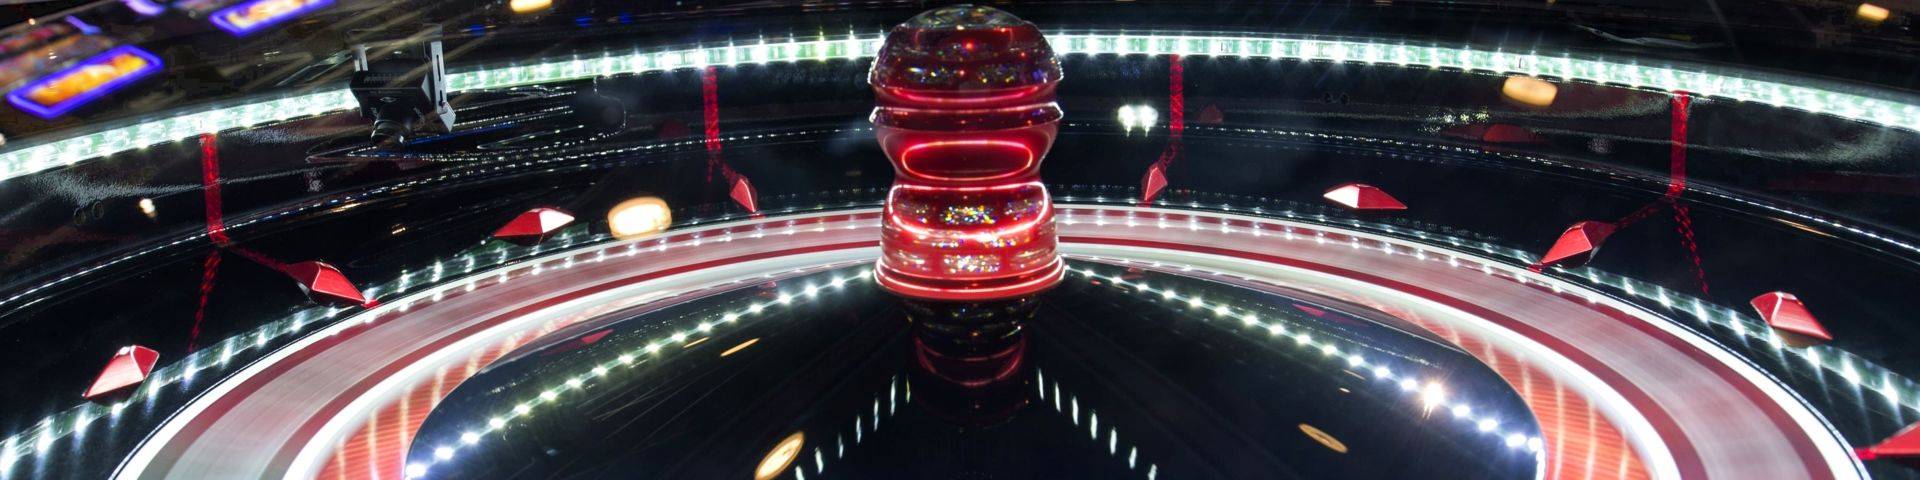 Roulette anglaise électronique casino JOA